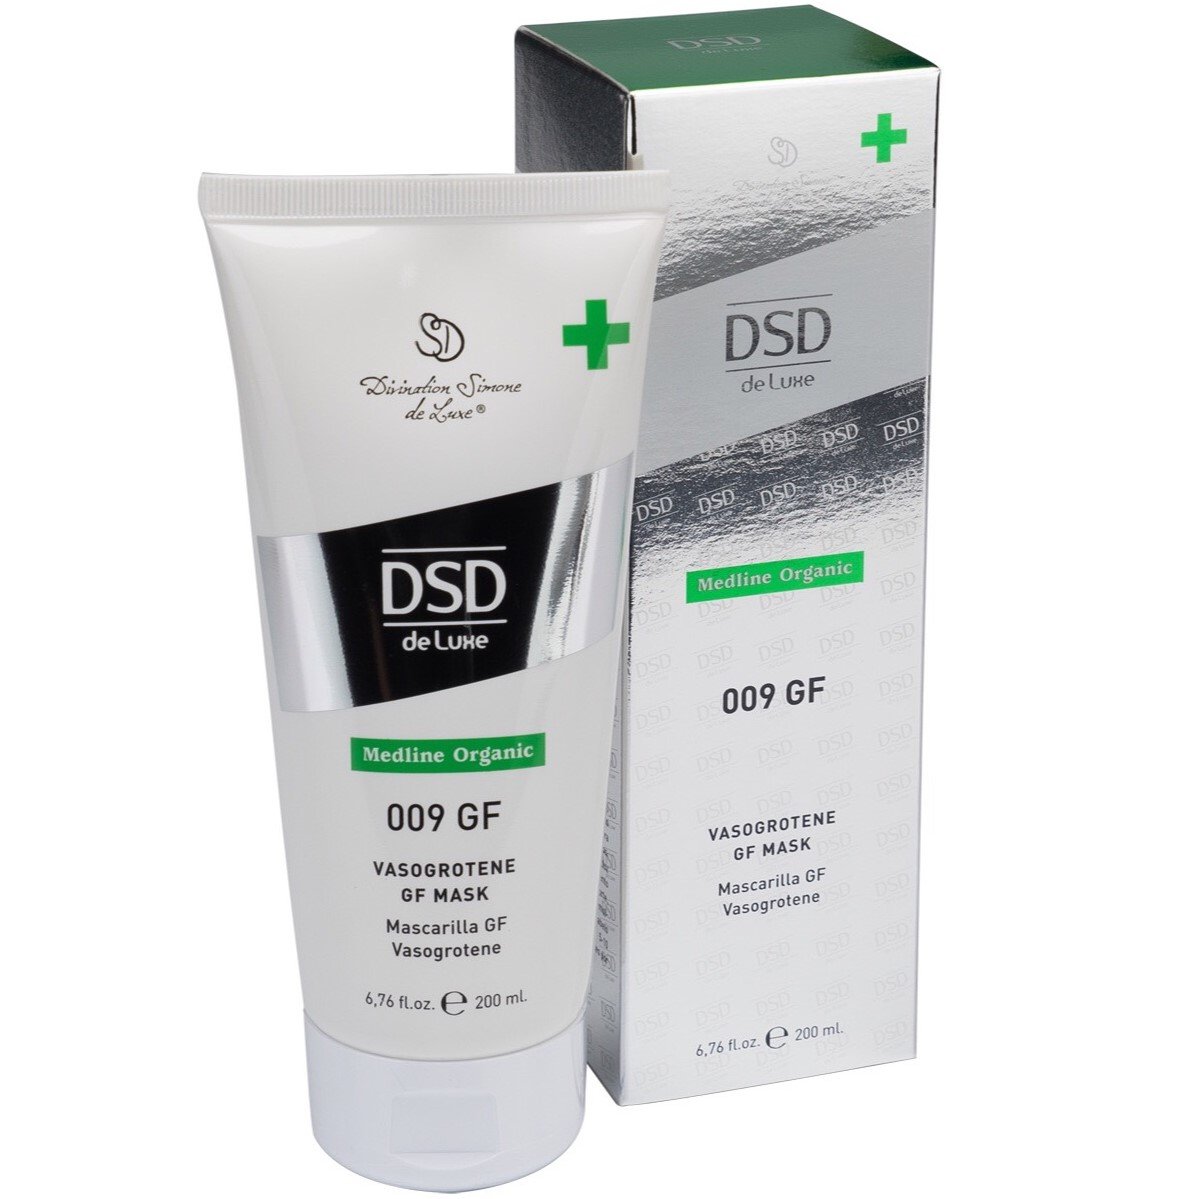 Маска DSD de Luxe 009 Medline Organic Vasogrotene Gf Mask для укрепления волос и и улучшения их роста, 200 мл - фото 1